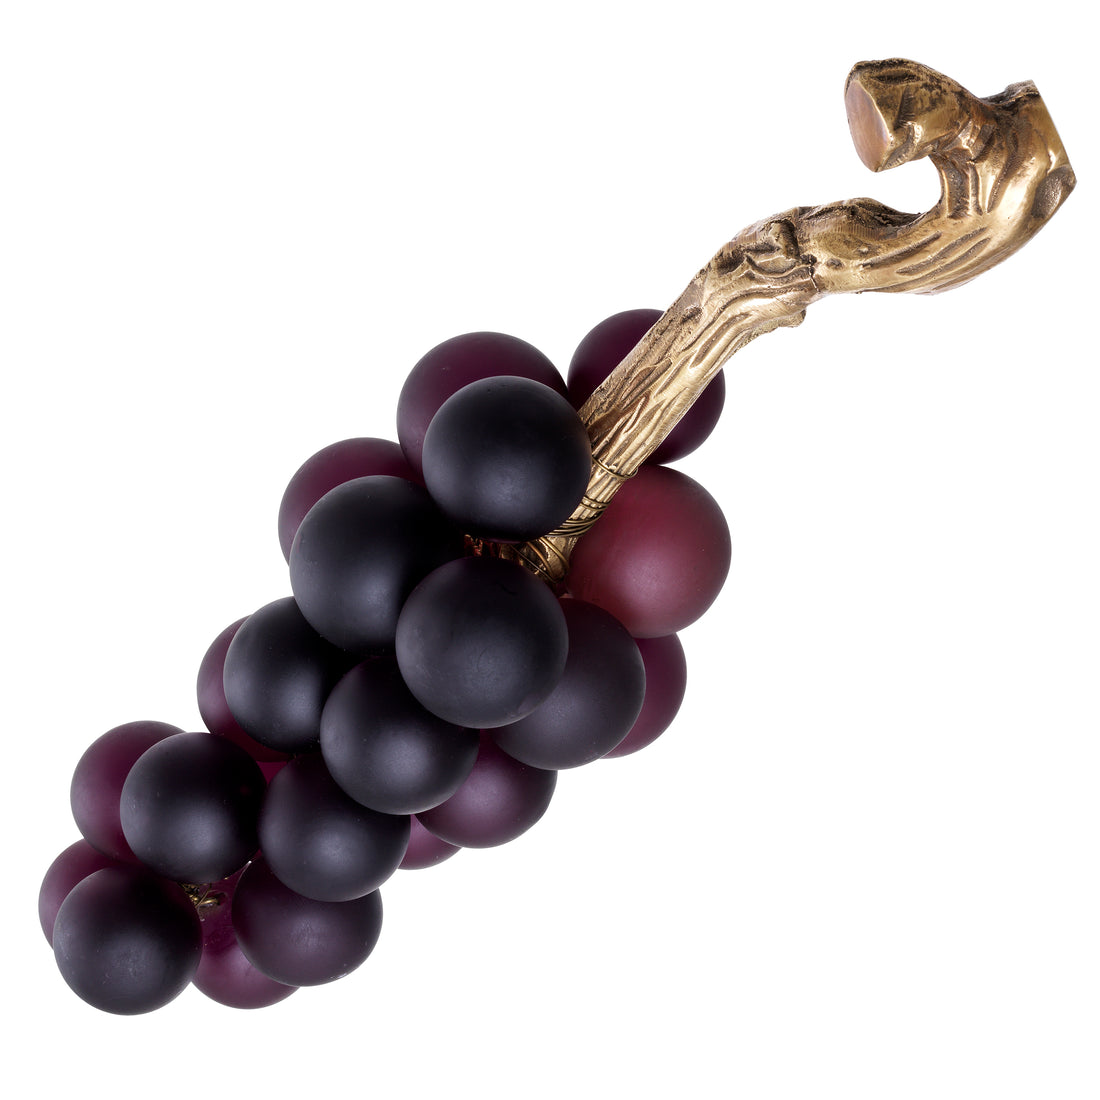 Objeto uvas francesas